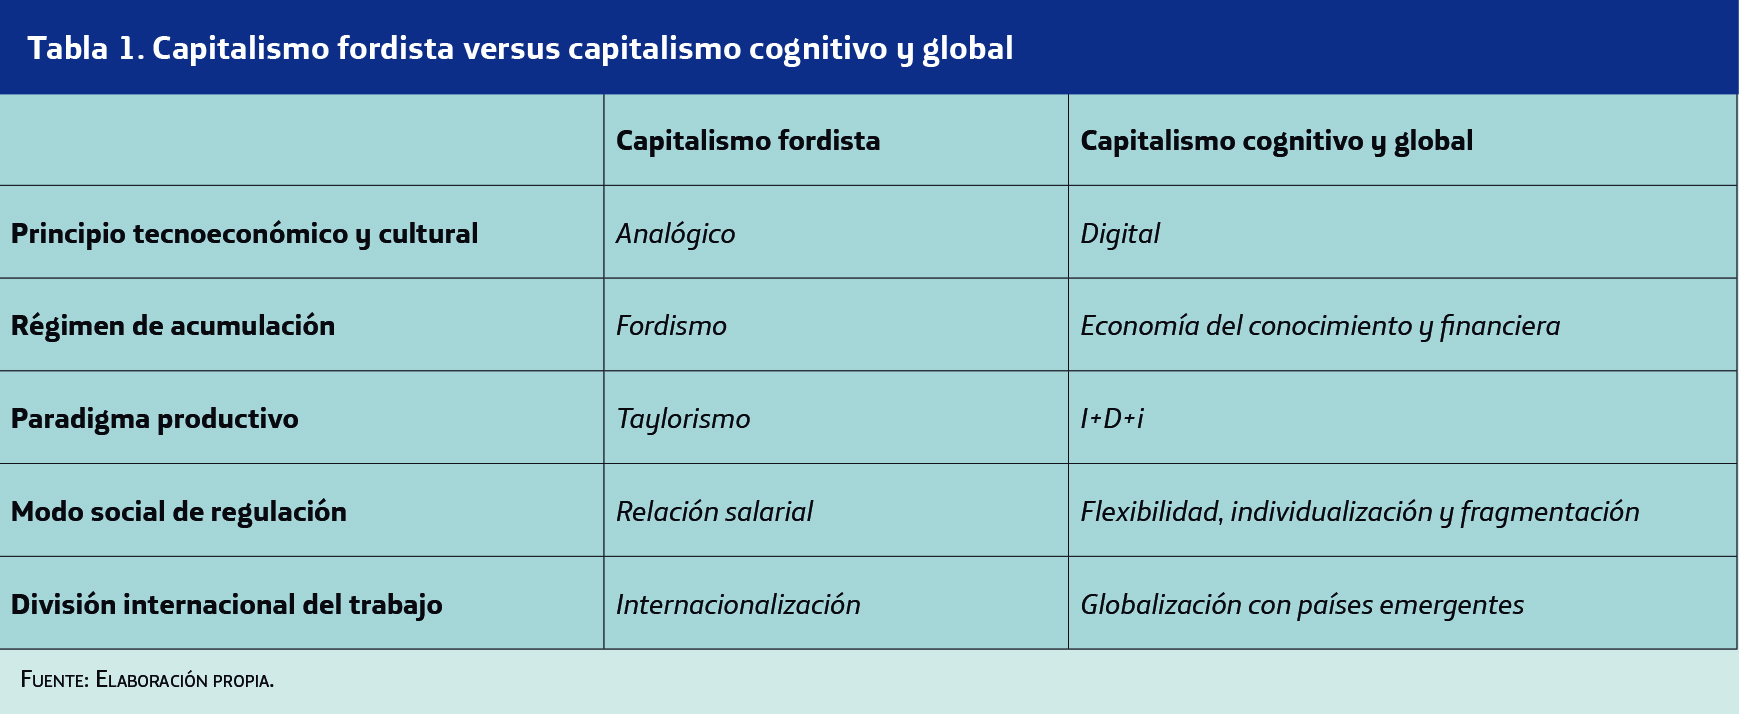 capitalismo fordista versus capitalismo cognitivo y global